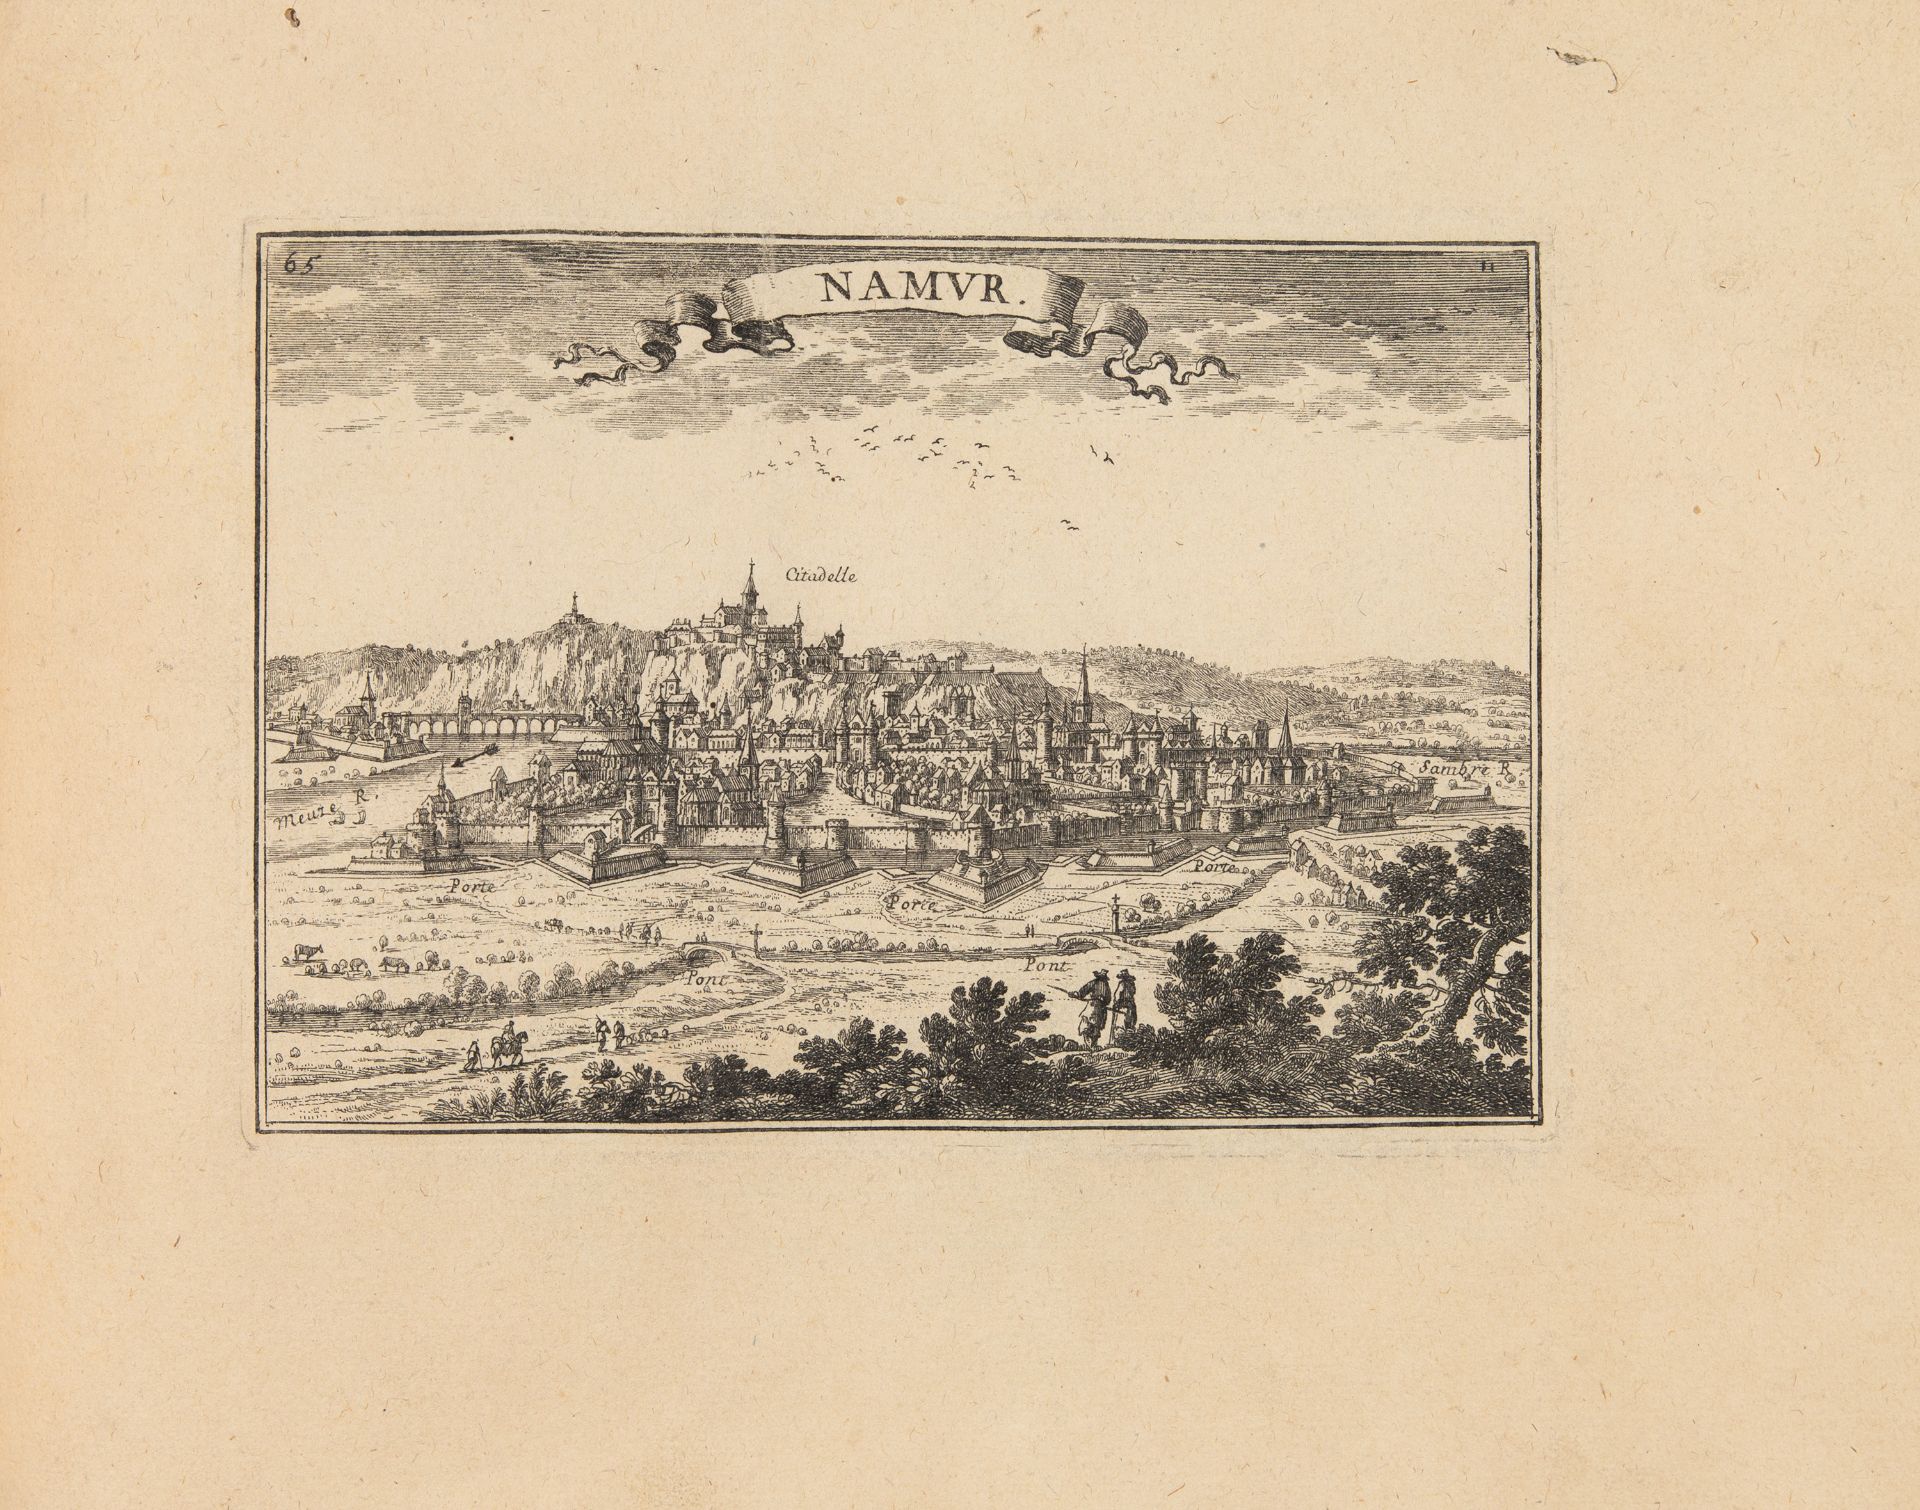 S. de Beaulieu de Pontault, Les plans et profils des principales villes et lieux ... Paris um 1680. - Bild 3 aus 6